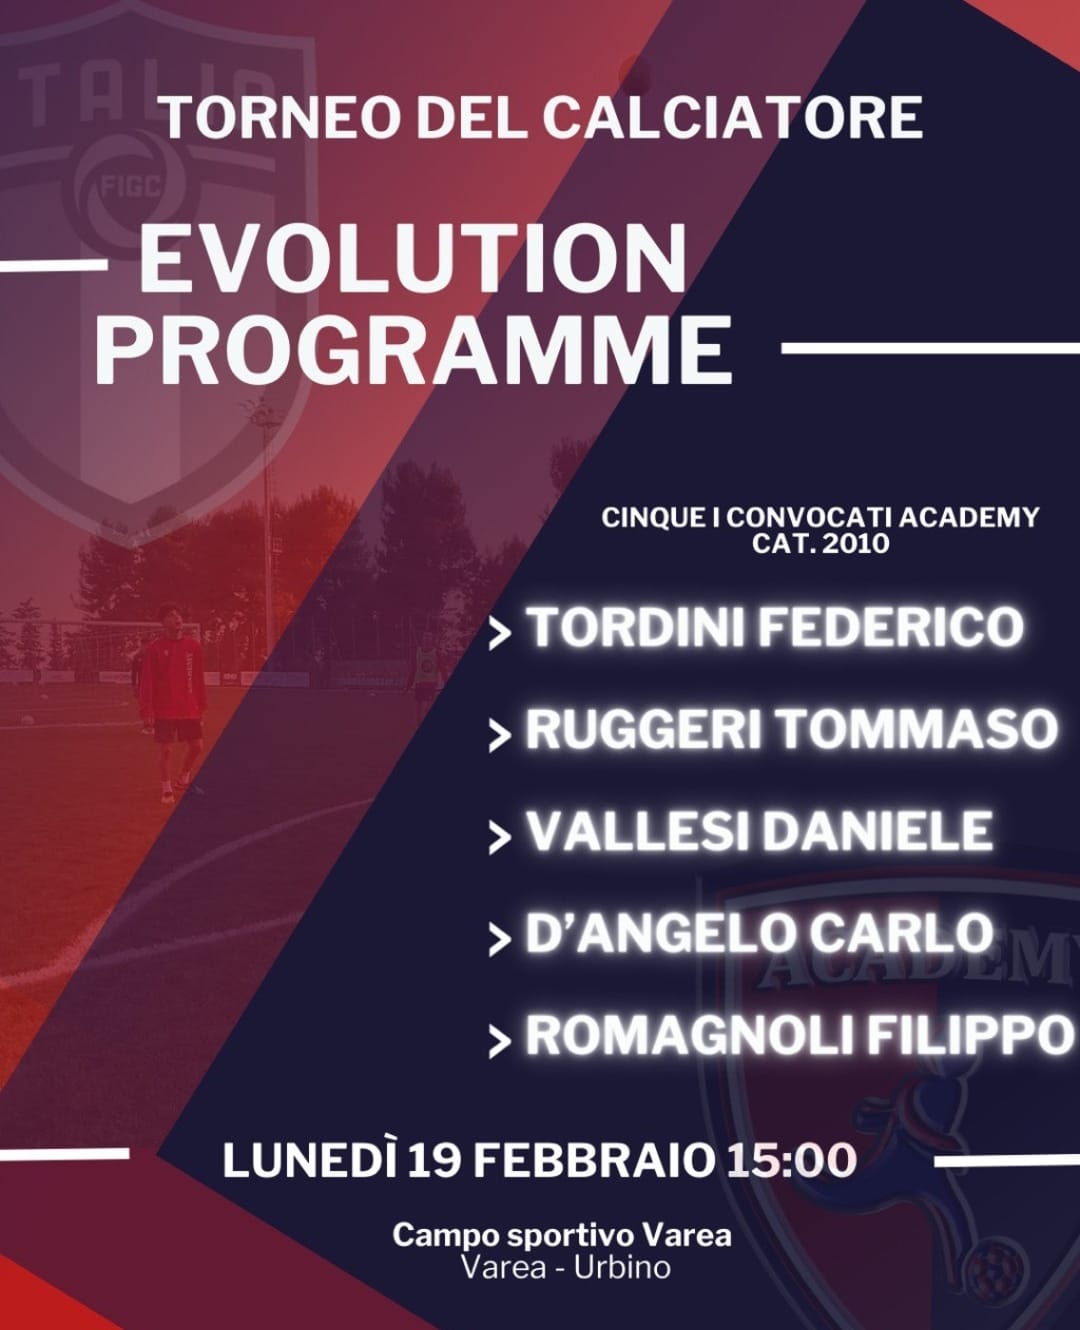 torneo del calciatore FIGC evolution programme convocati scuola calcio civitanova marche academy civitanovese